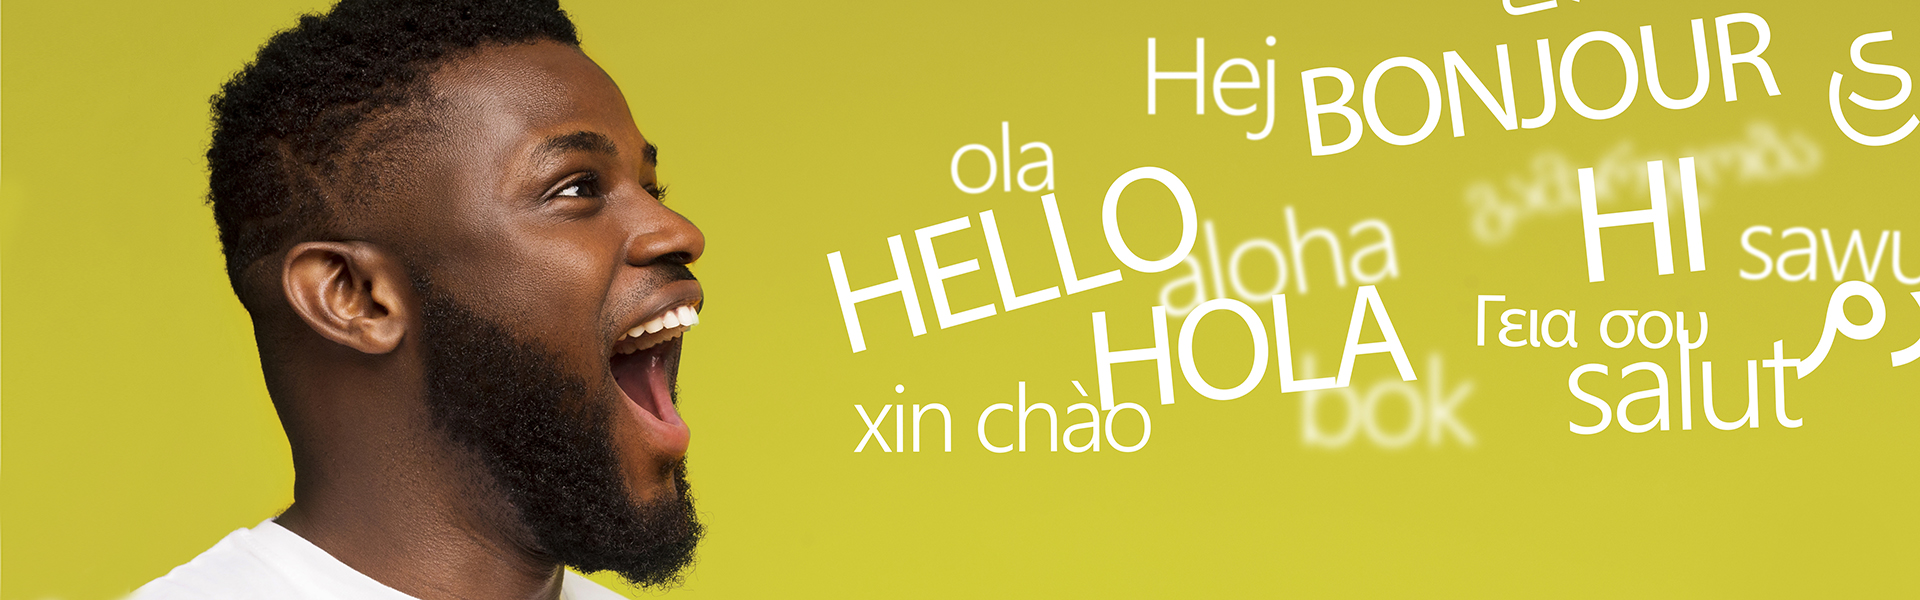 Mann beim Sprechen; das Wort "Hallo" in mehreren Sprachen visualisiert vor seinem Mund